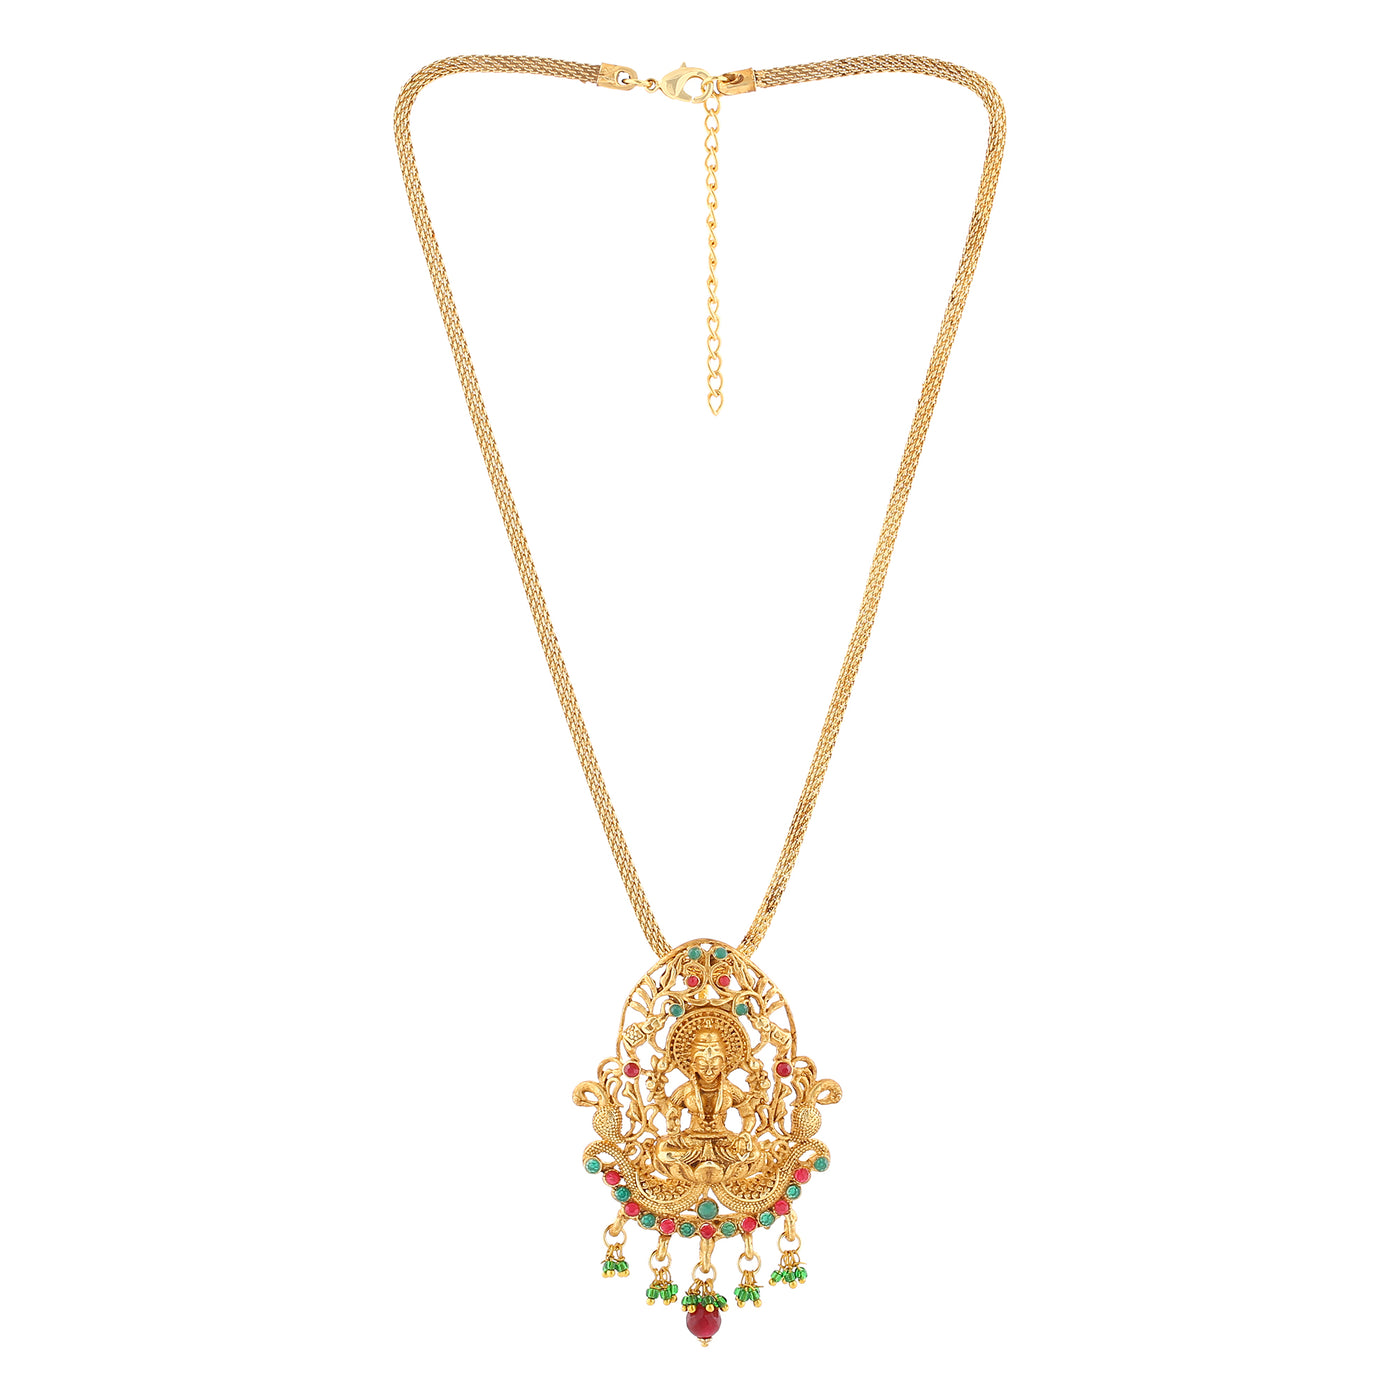 Estele Gold Plated Lakshmi Devi Designer Necklace set with Crystals for Women